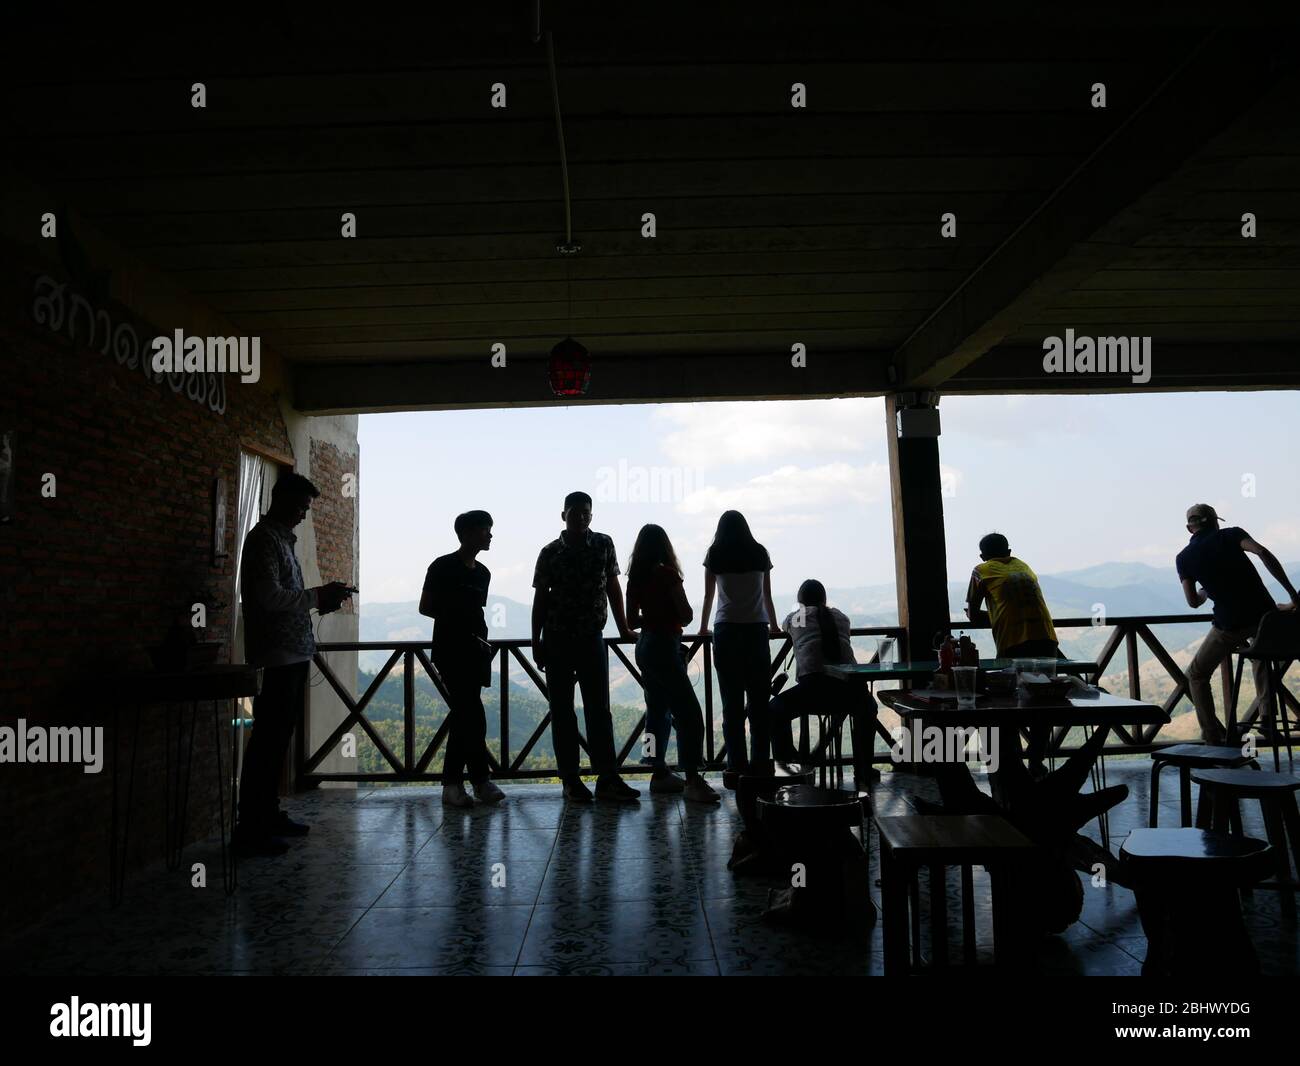 La silhouette della gente nel caffè Sakad, famoso punto di riferimento preferito a Pui, Nan, Thailandia Foto Stock